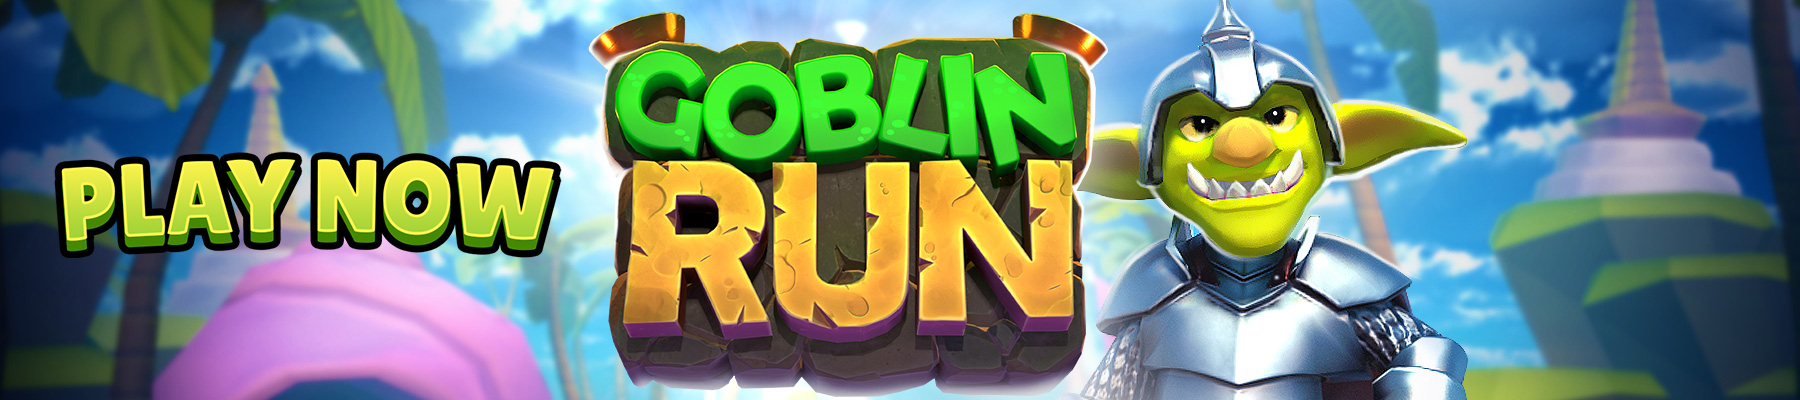 اکنون Goblin Run را بازی کنید